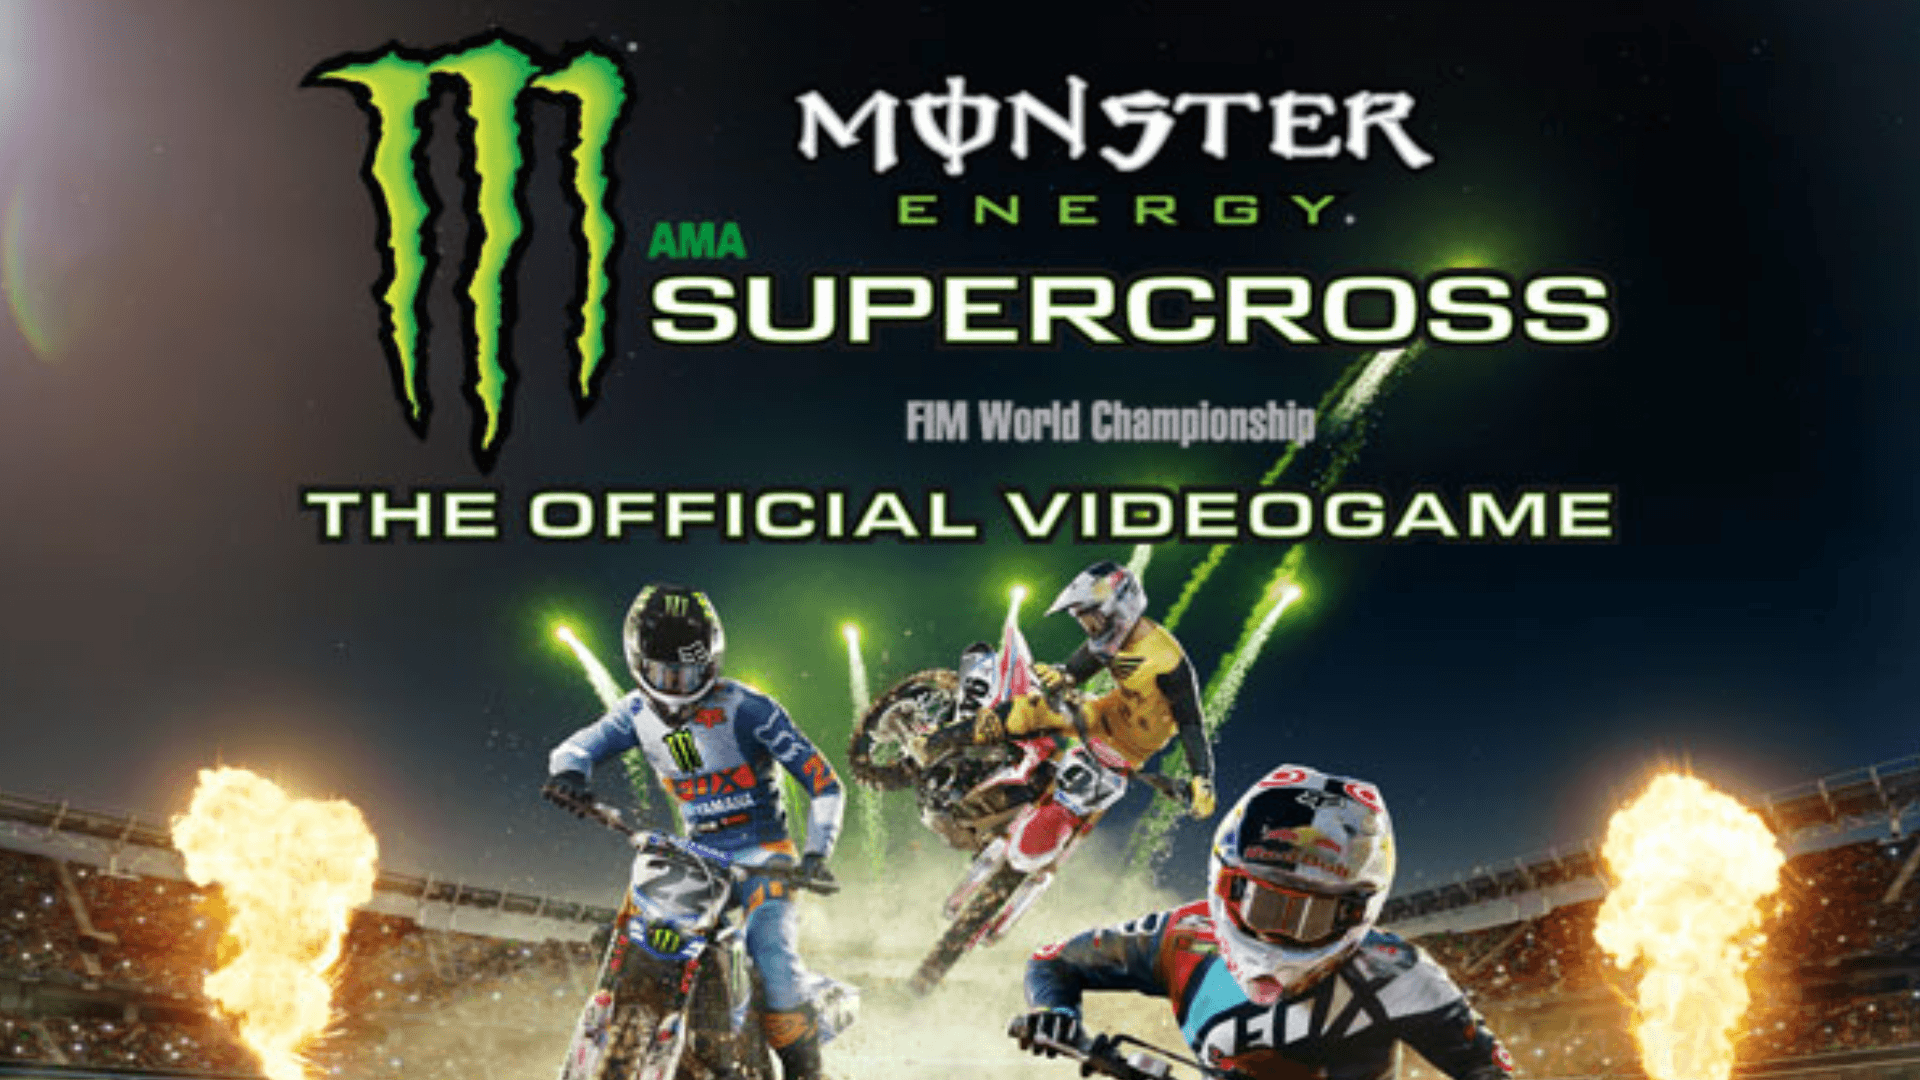 Monster.Energy.Supercross.The.Official.Videogame.Update.v20180226